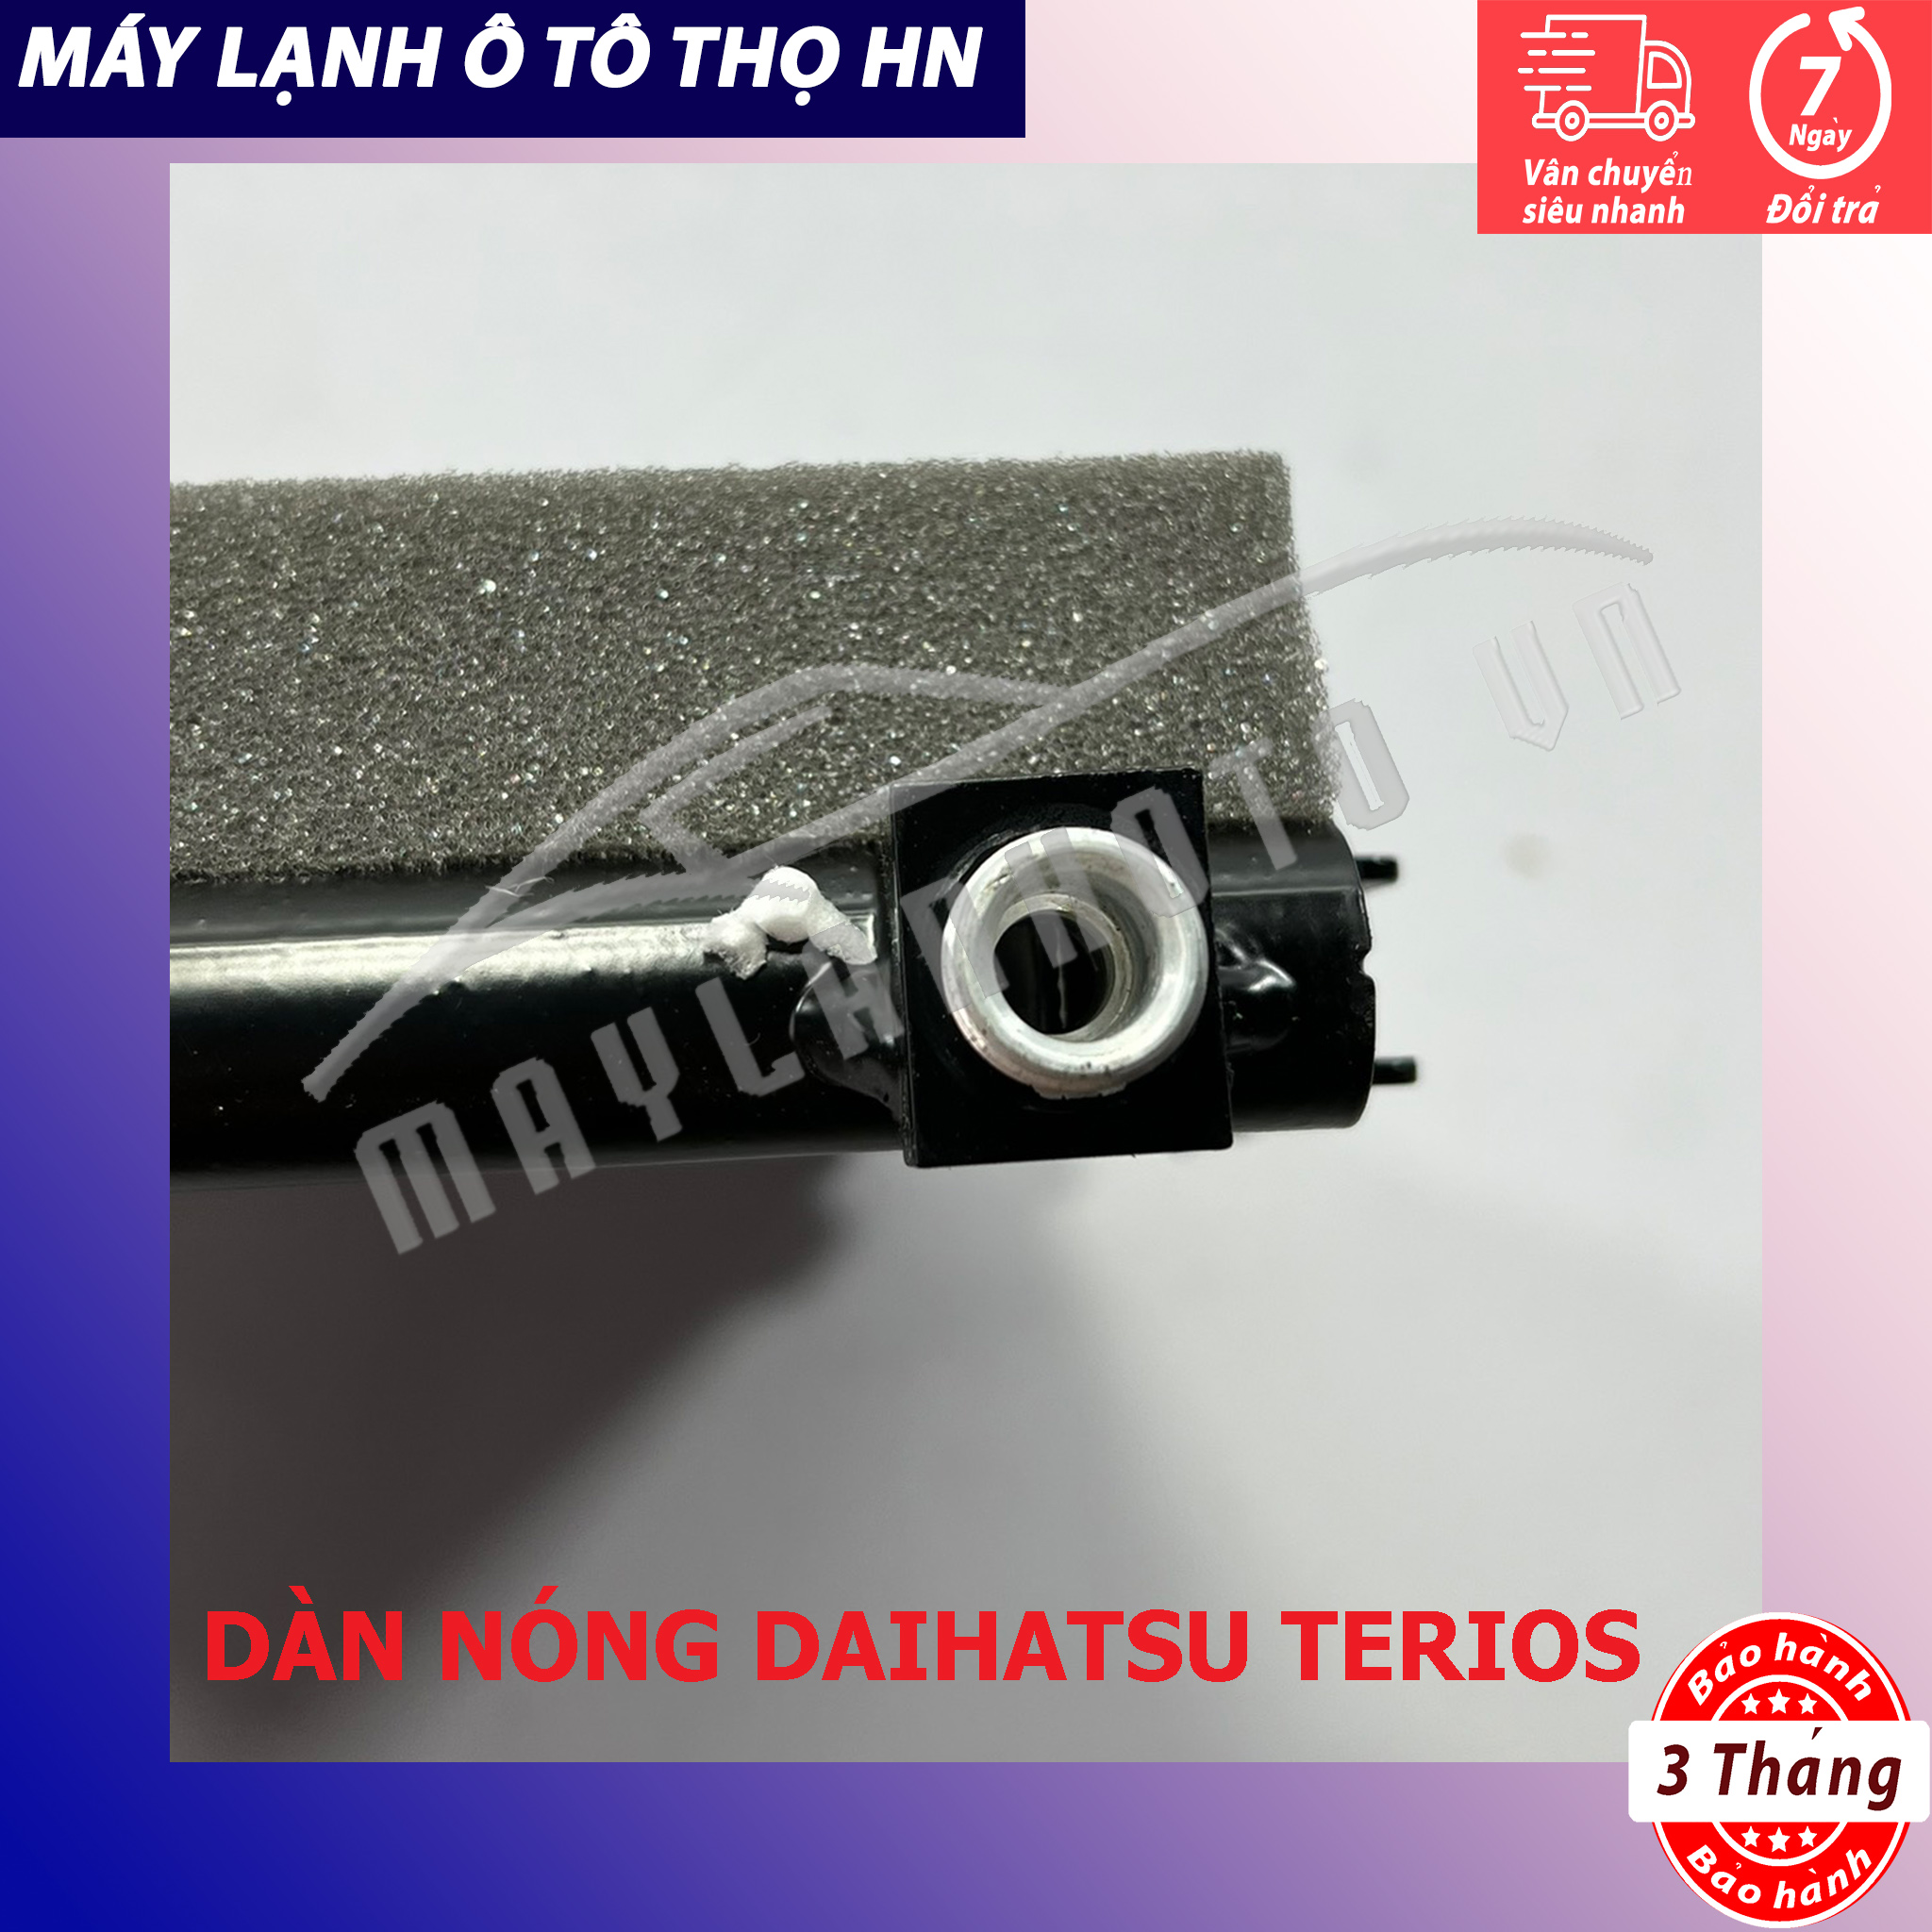 Dàn (giàn) nóng Daihatsu Terios Hàng xịn Thái Lan (hàng chính hãng nhập khẩu trực tiếp)